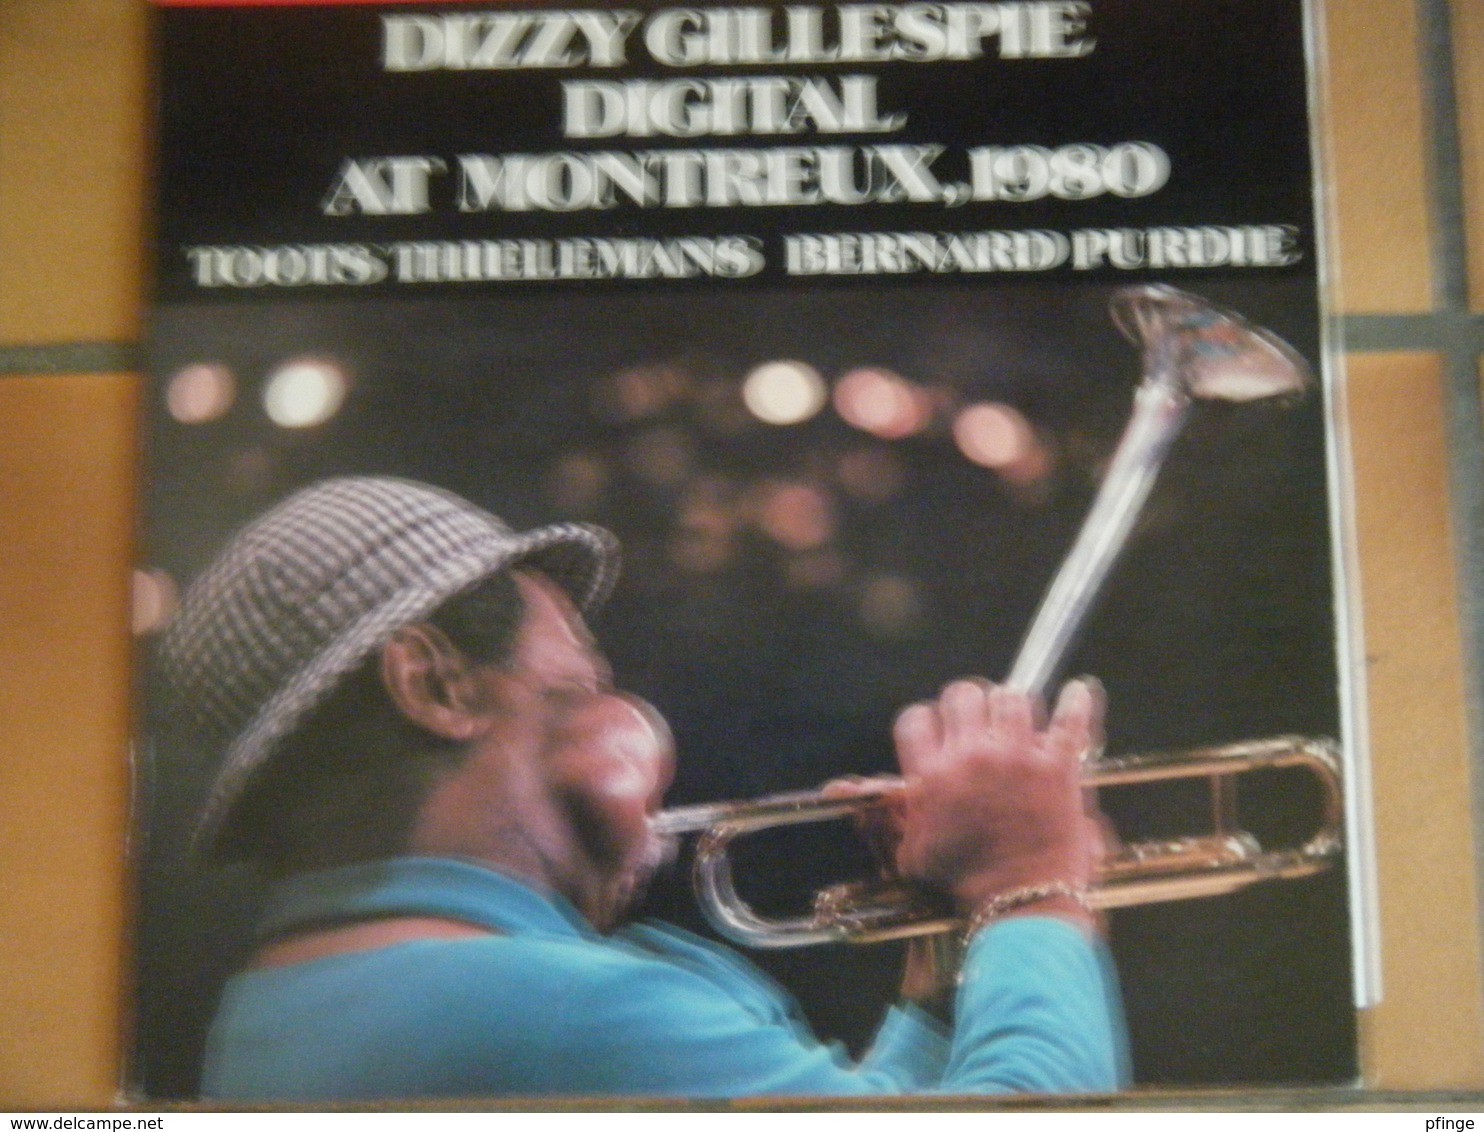 Dizzy Gillespie Digital At Montreux, 1980 - Jazz